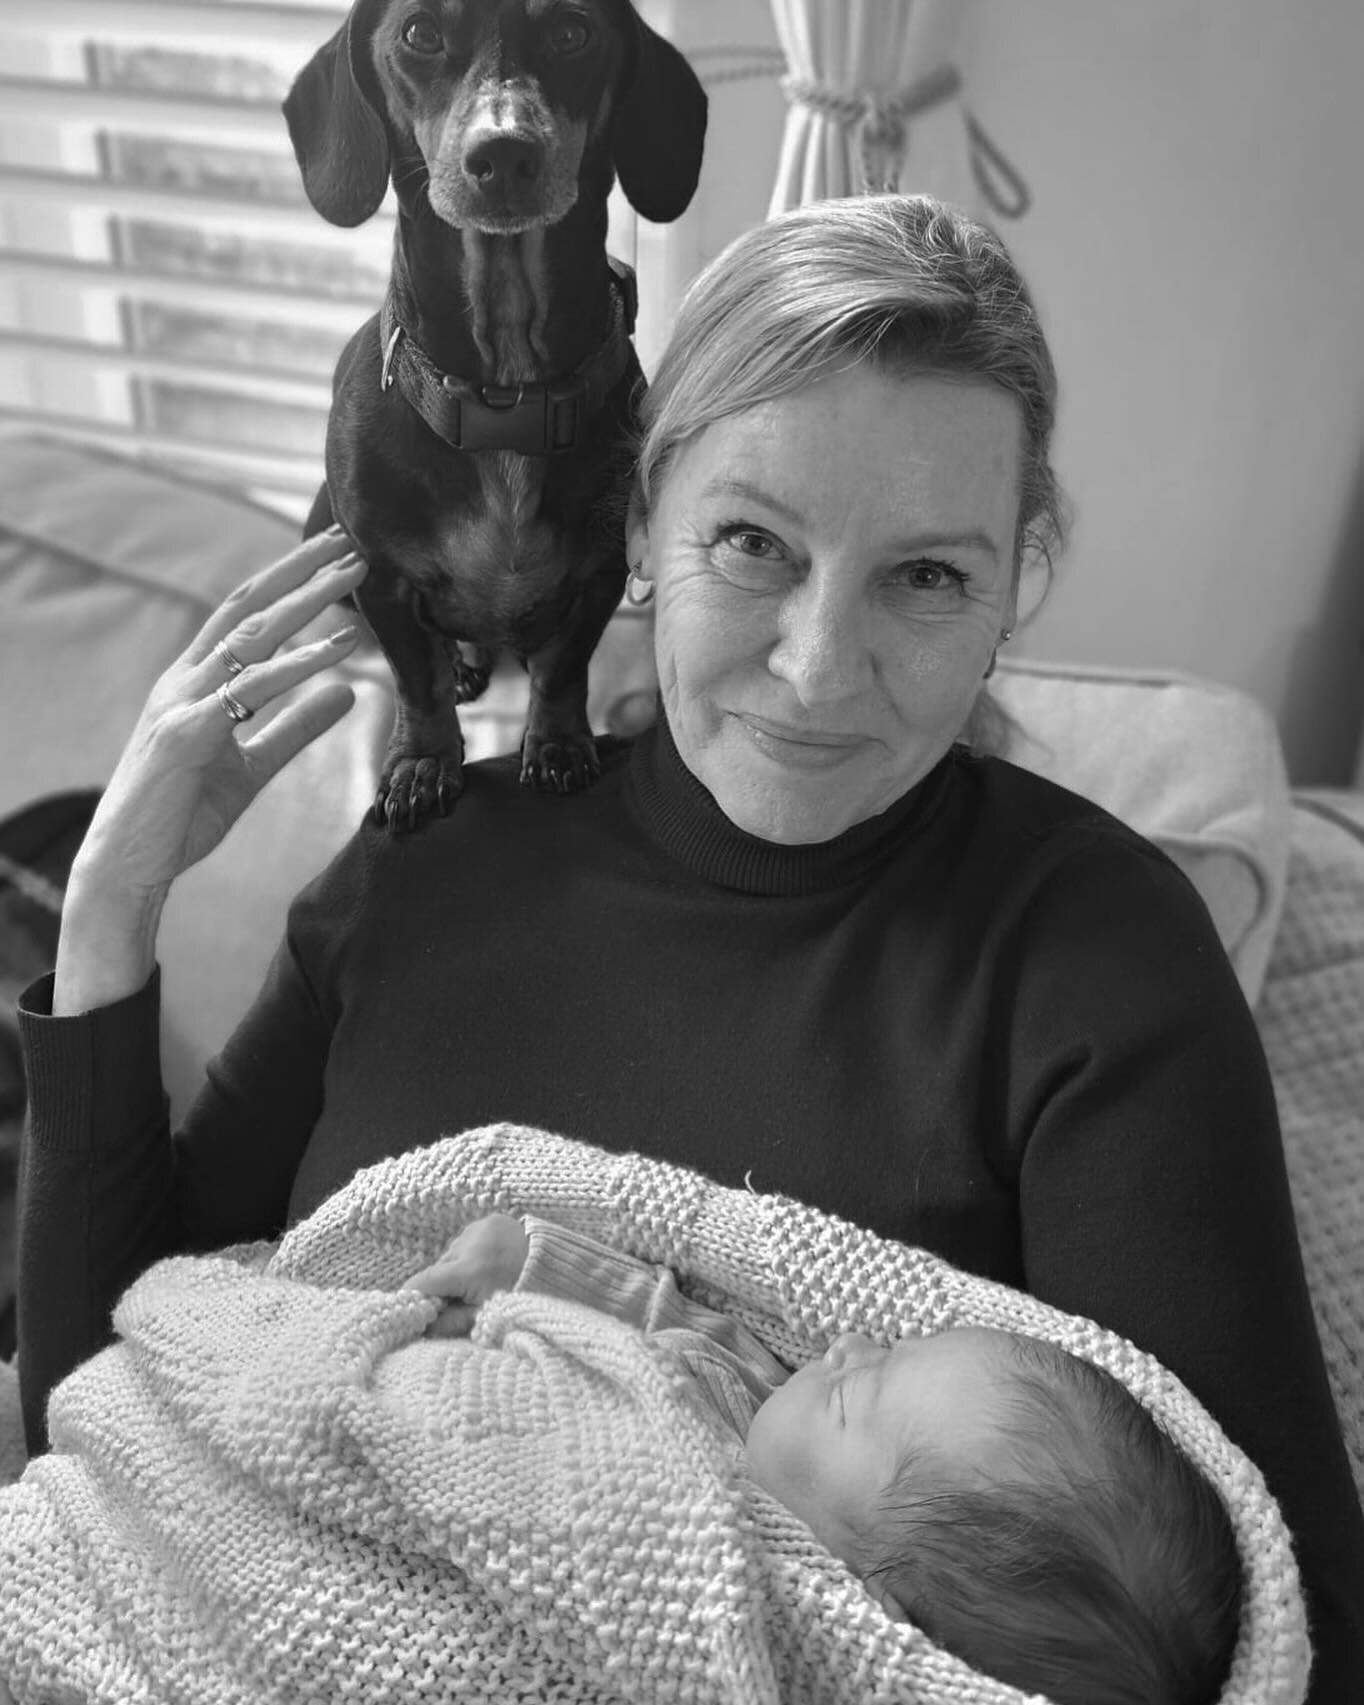 Family portrait. Grand daughter and Grand pup. 

.
.
.
.
#family #familytime #familylove #london #dashund #babylove❤️ #smitten 

@karendevilliers_mysilverstreet